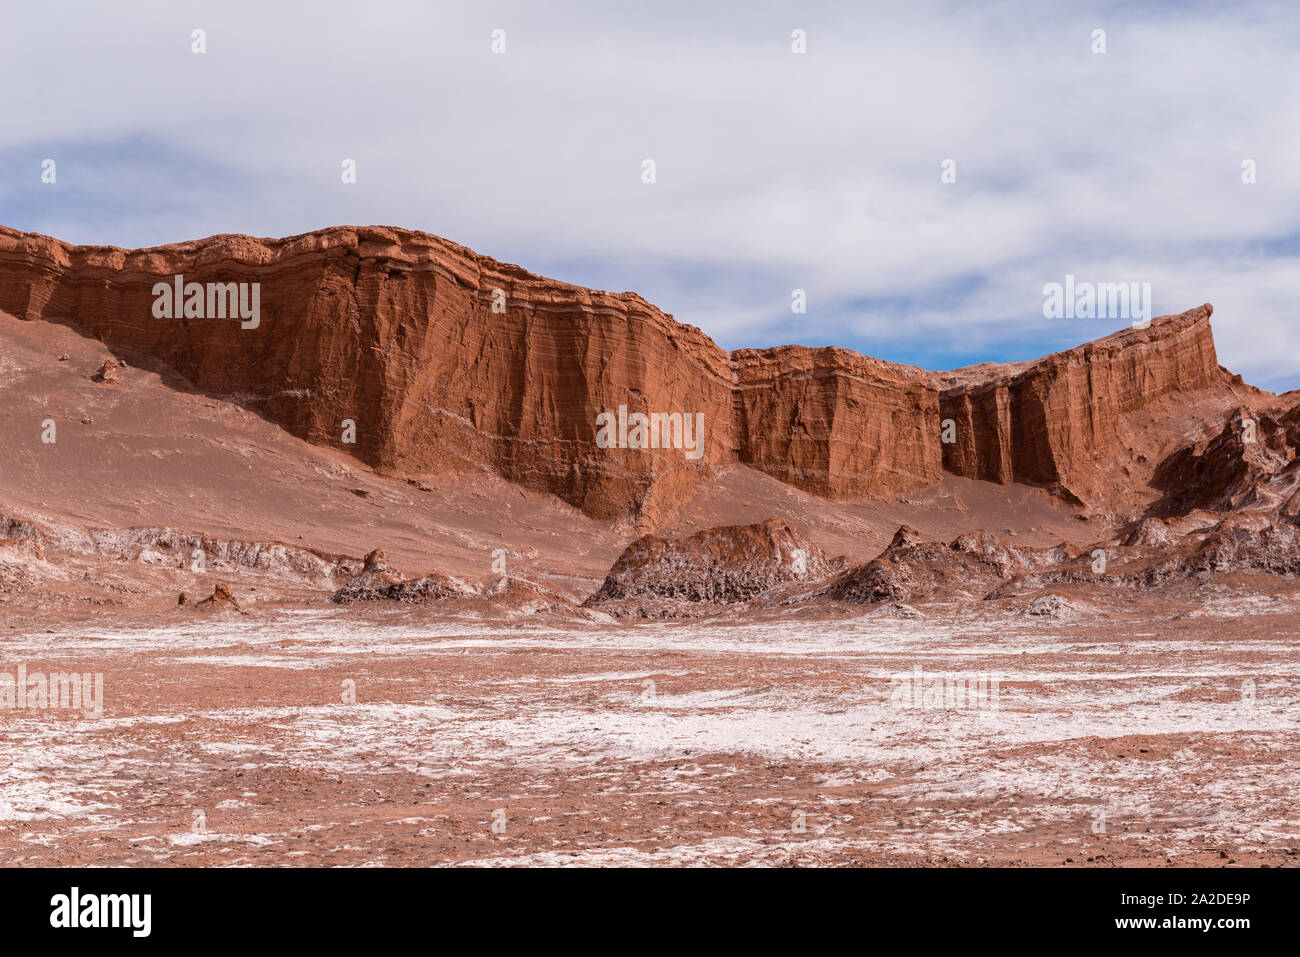 Rock formation "Amphi Theatre" in Valle de la Luna or Moon Valley, San Pedro de Atacama, Republic of Chile, Latin America Stock Photo